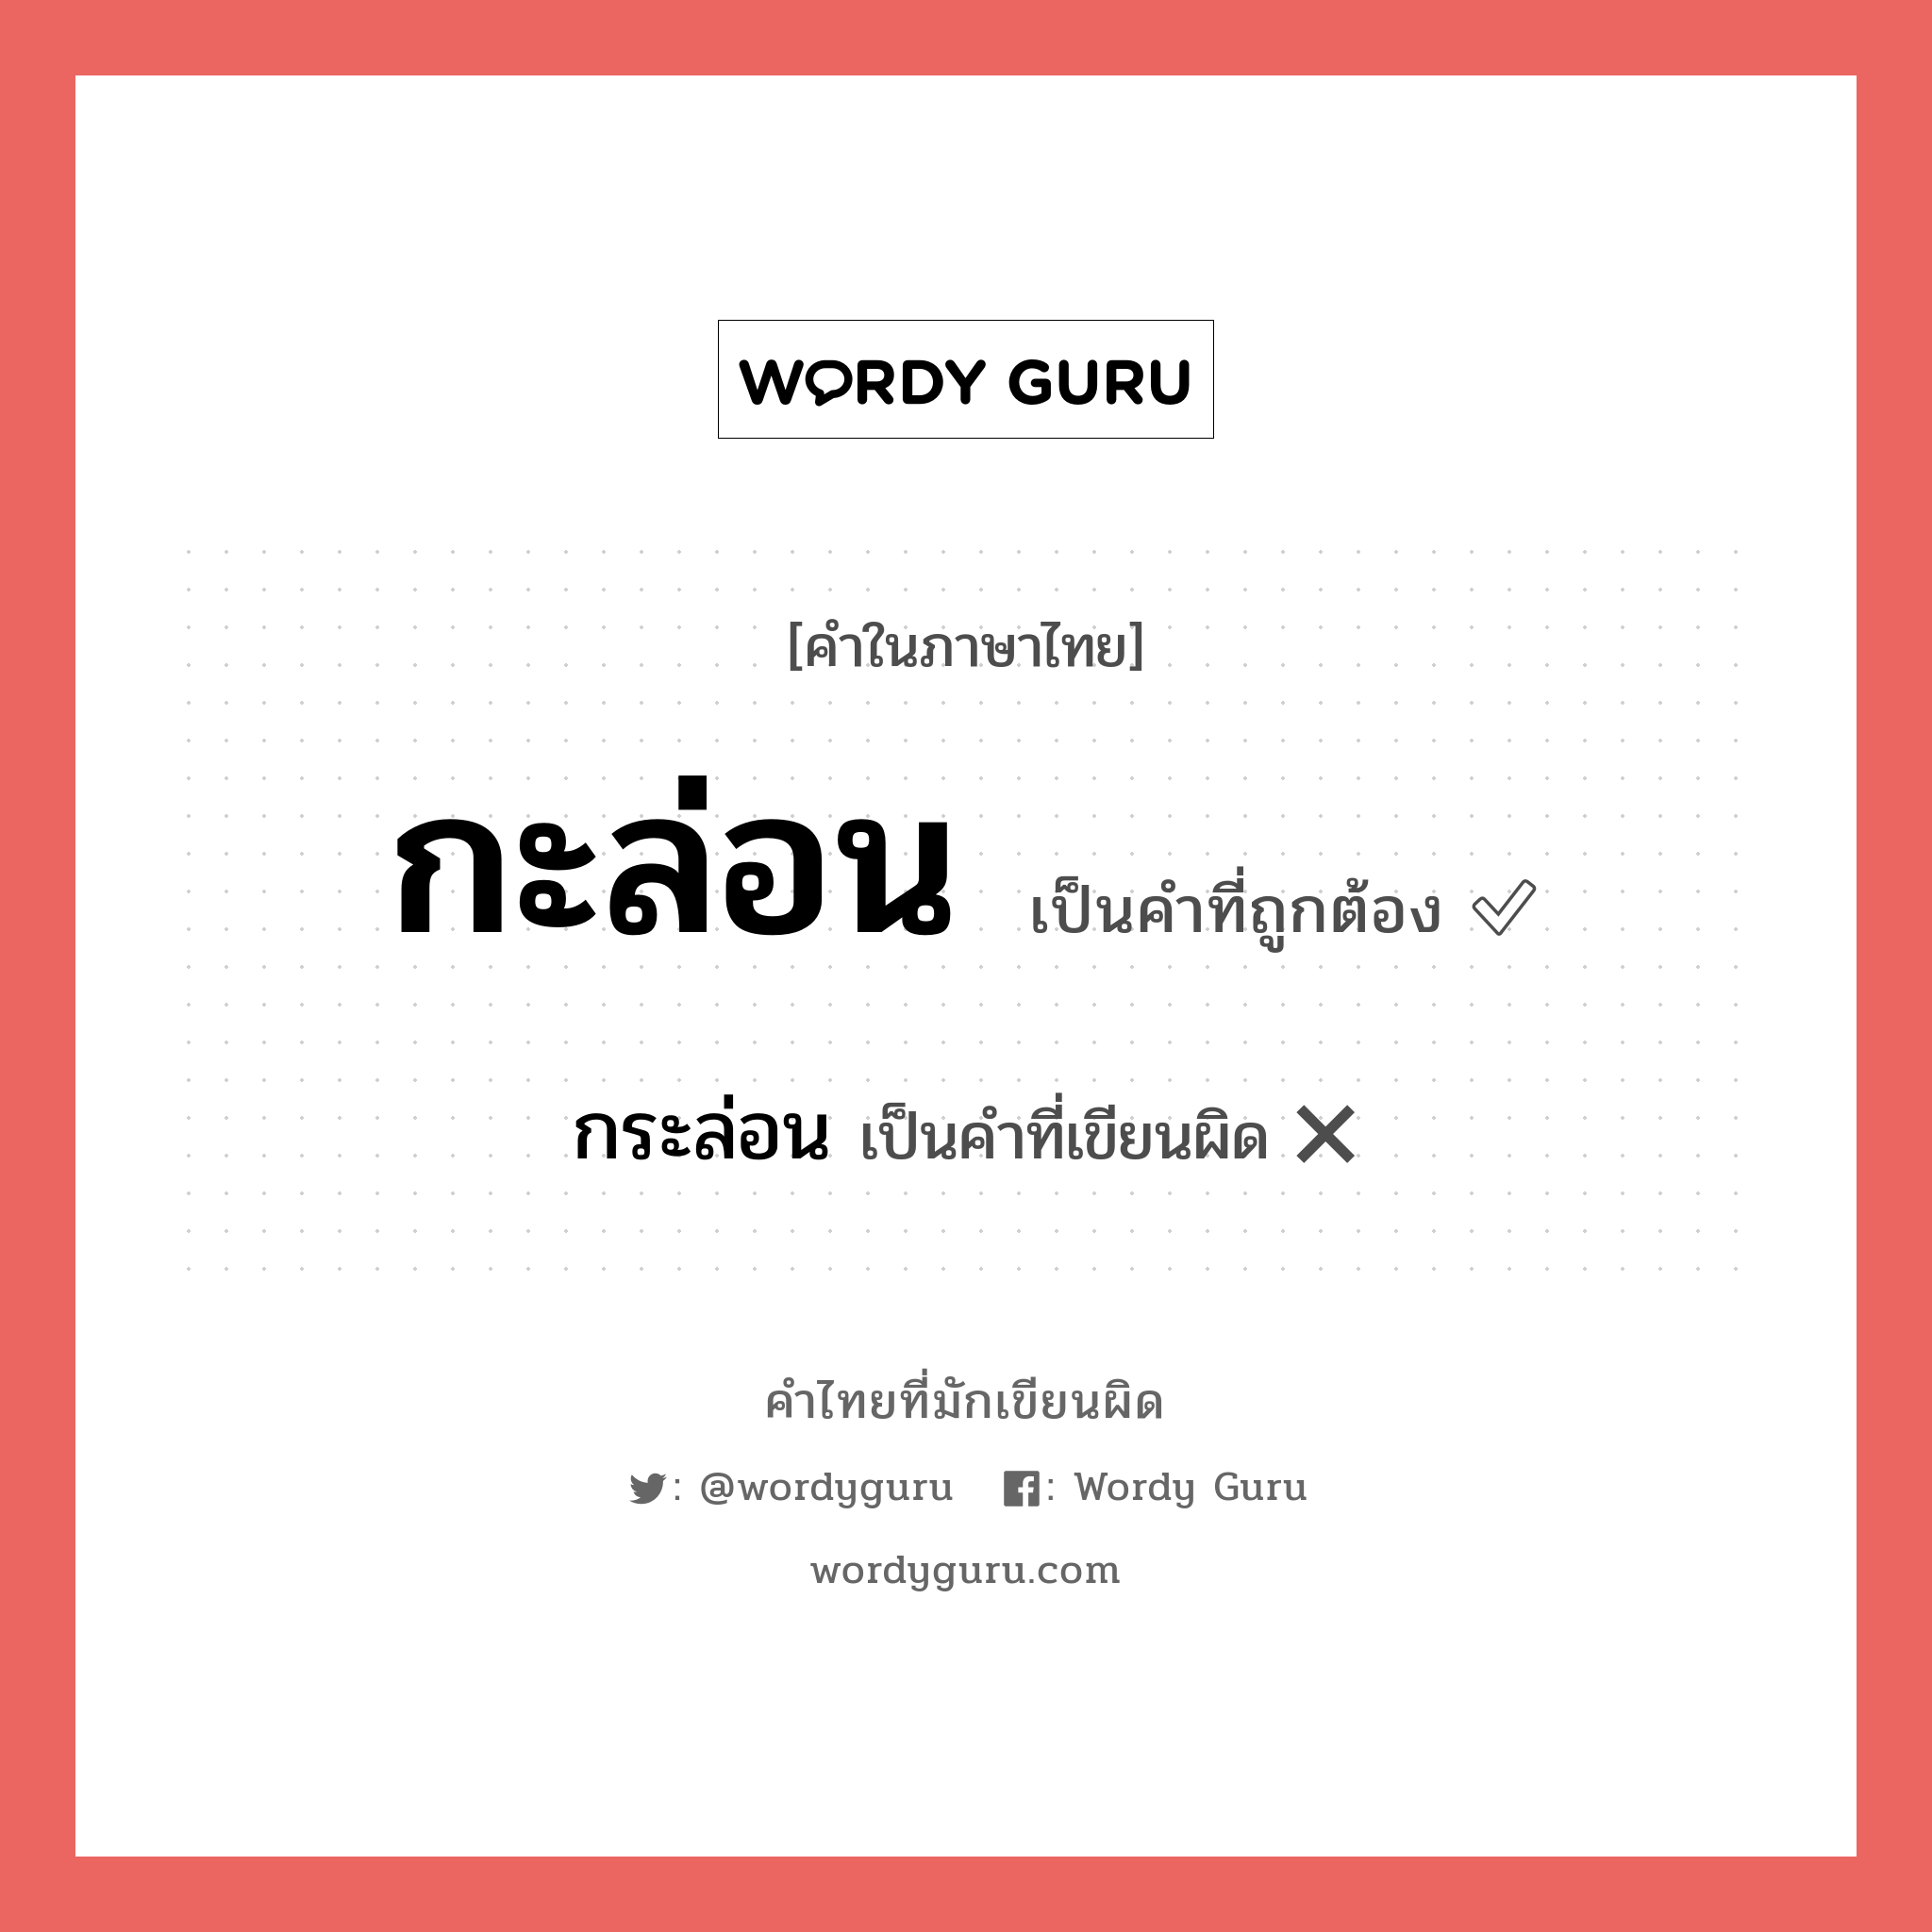 กระล่อน หรือ กะล่อน คำไหนเขียนถูก?, คำในภาษาไทยที่มักเขียนผิด กระล่อน คำที่ผิด ❌ กะล่อน